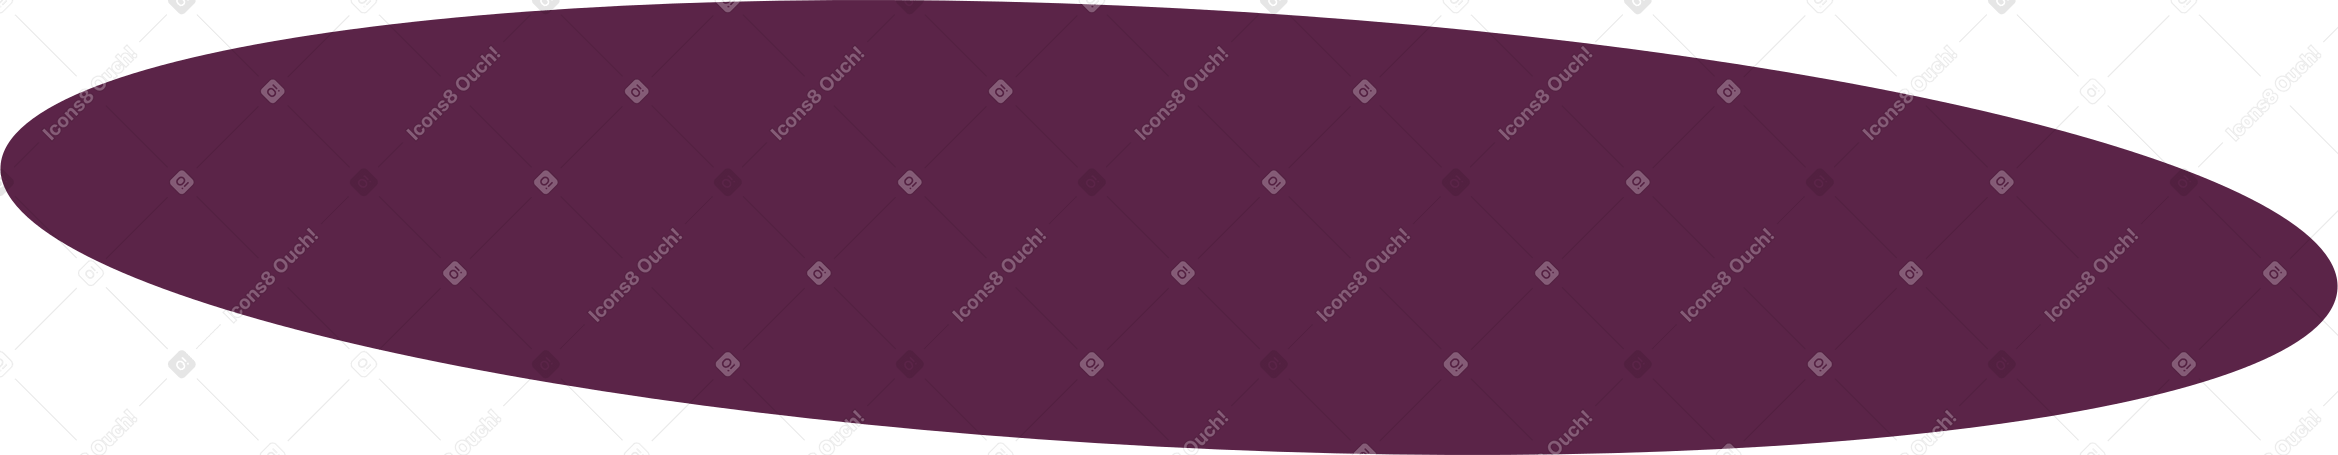 burgundy oval background Illustration in PNG, SVG